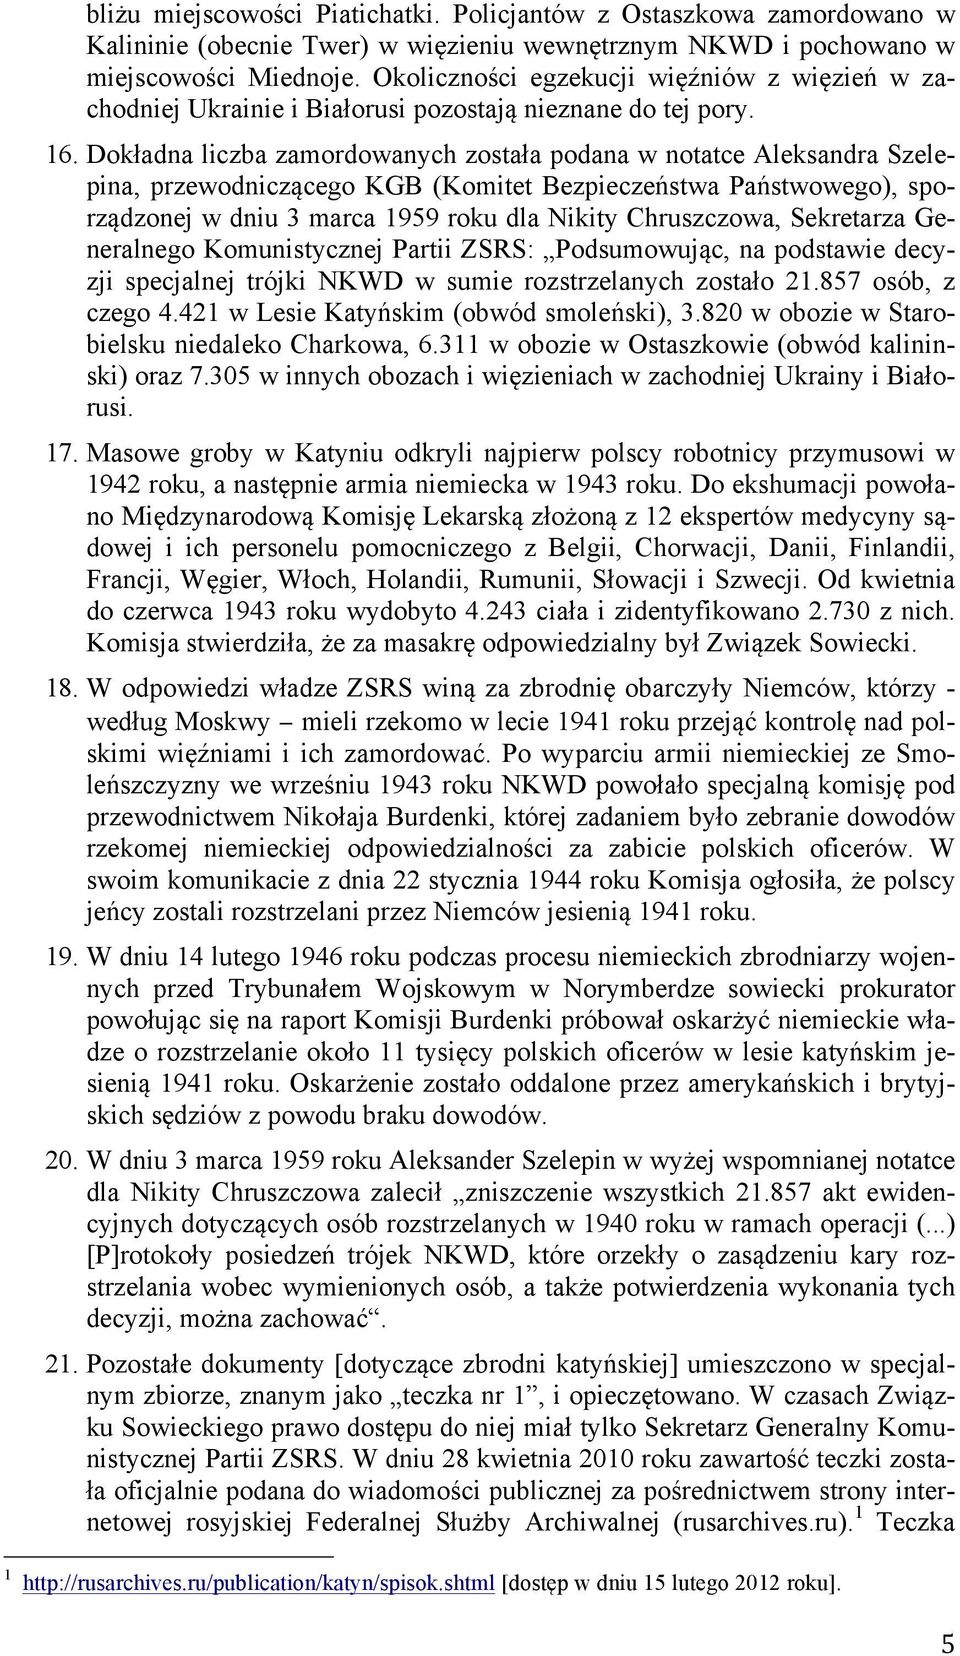 Dokładna liczba zamordowanych została podana w notatce Aleksandra Szelepina, przewodniczącego KGB (Komitet Bezpieczeństwa Państwowego), sporządzonej w dniu 3 marca 1959 roku dla Nikity Chruszczowa,